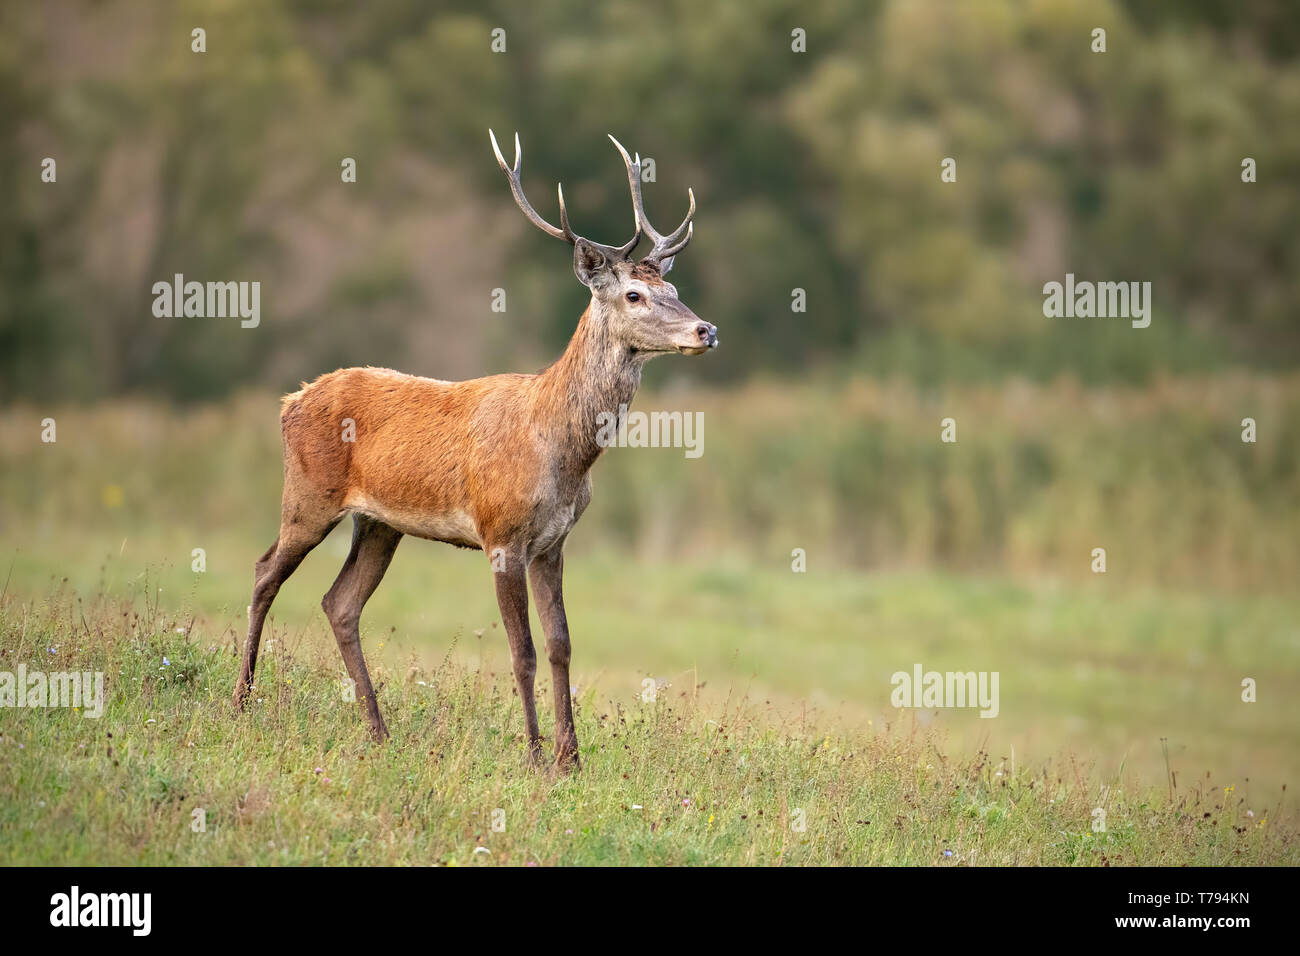 Les jeunes red deer, Cervus elaphus, stag en été sur une prairie avec courte herbe verte. Animaux sauvages dans la nature. Banque D'Images